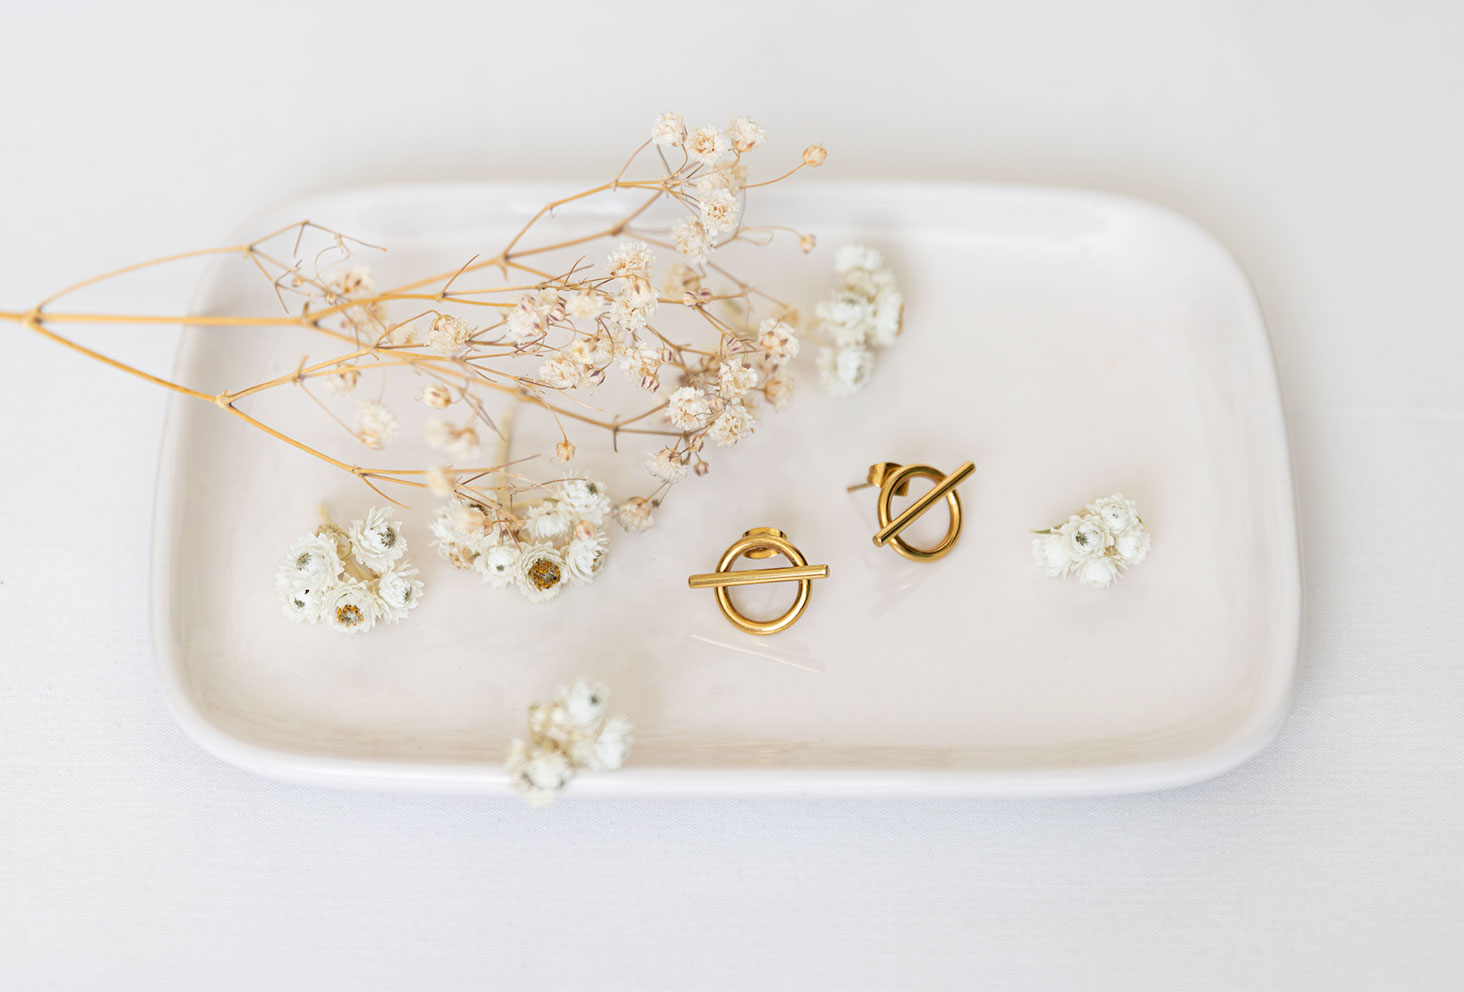 Les boucles d'oreille dorées Vaniya Bijoux sur fond blanc, posées dans une coupelle rectangulaire blanche au milieu de fleurs séchées